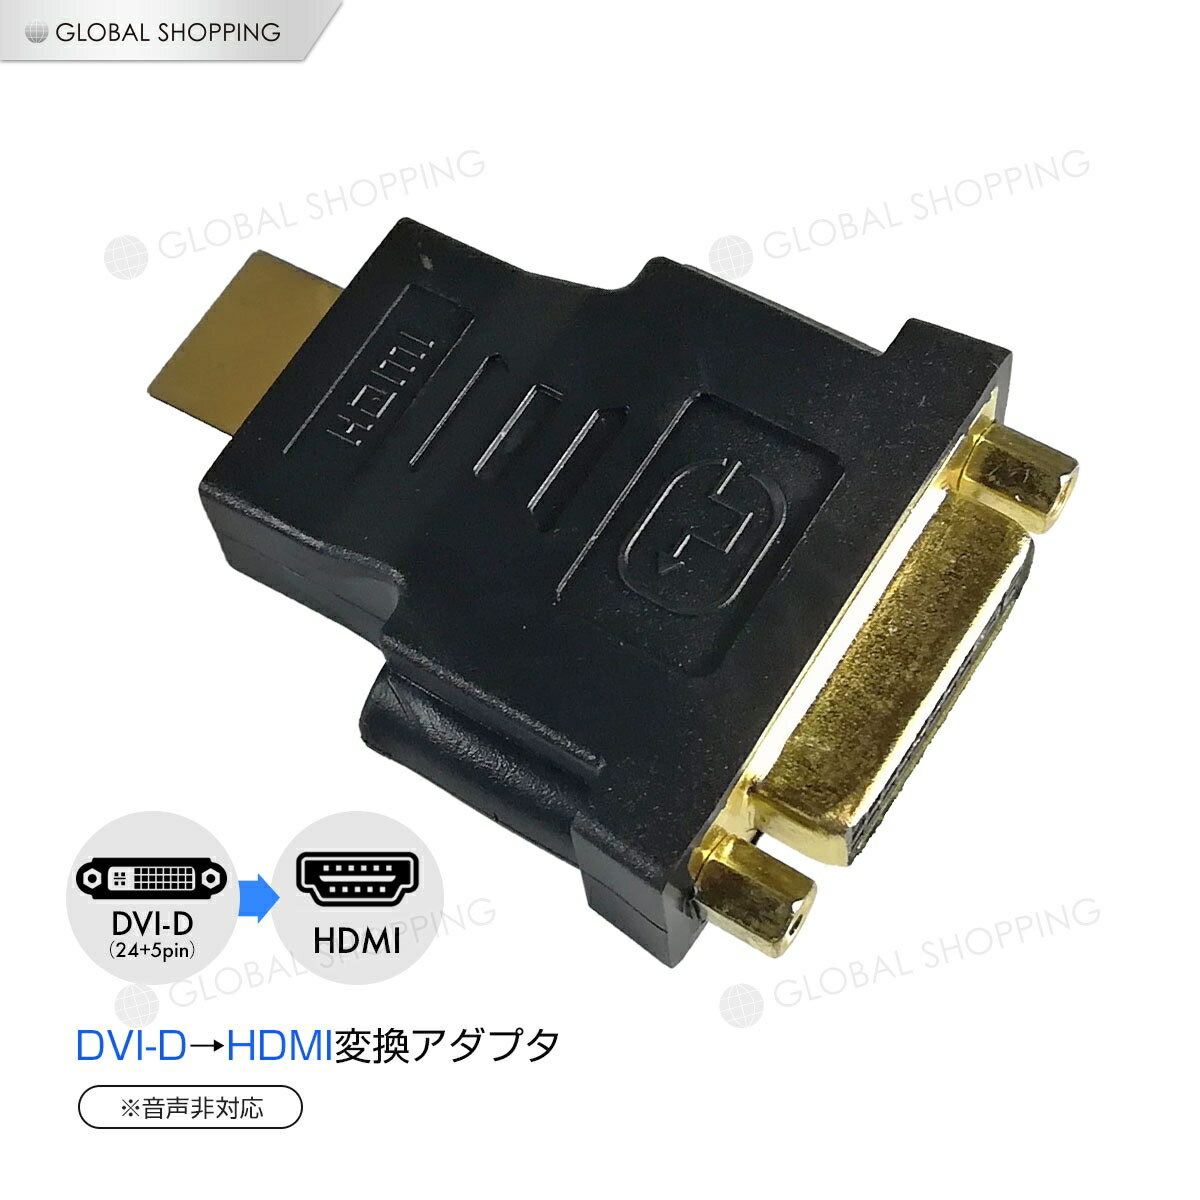 保証付 HDMI DVI 変換アダプター 変換コネクタ HDMIオス DVI 24+5ピン 29ピン メス 変換 DVI凹 HDMI凸 DVI-I モニターケーブル変換接続 DVI-I 24+5pin 29pin HDMI端子 ディスプレイ変換 DVI-I HDMI 変換アダプタ Dual Link デュアルリング デュアル デジタル アナログ